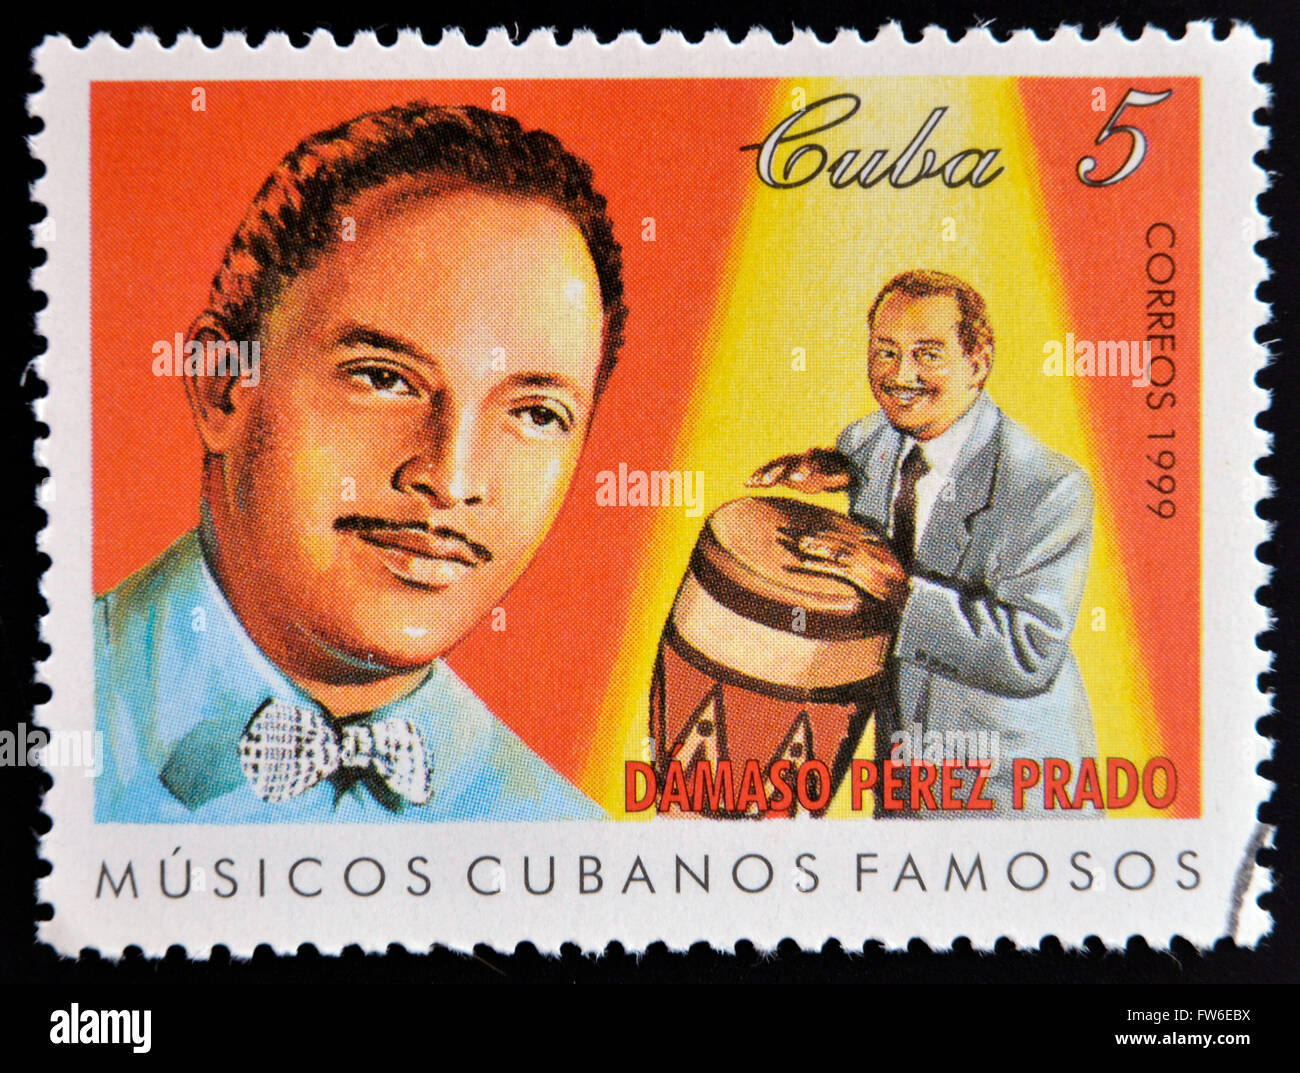 CUBA - VERS 1999 : un timbre imprimé en cuba dédié au célèbre musiciens cubains, spectacles Damaso Perez Prado, vers 1999 Banque D'Images